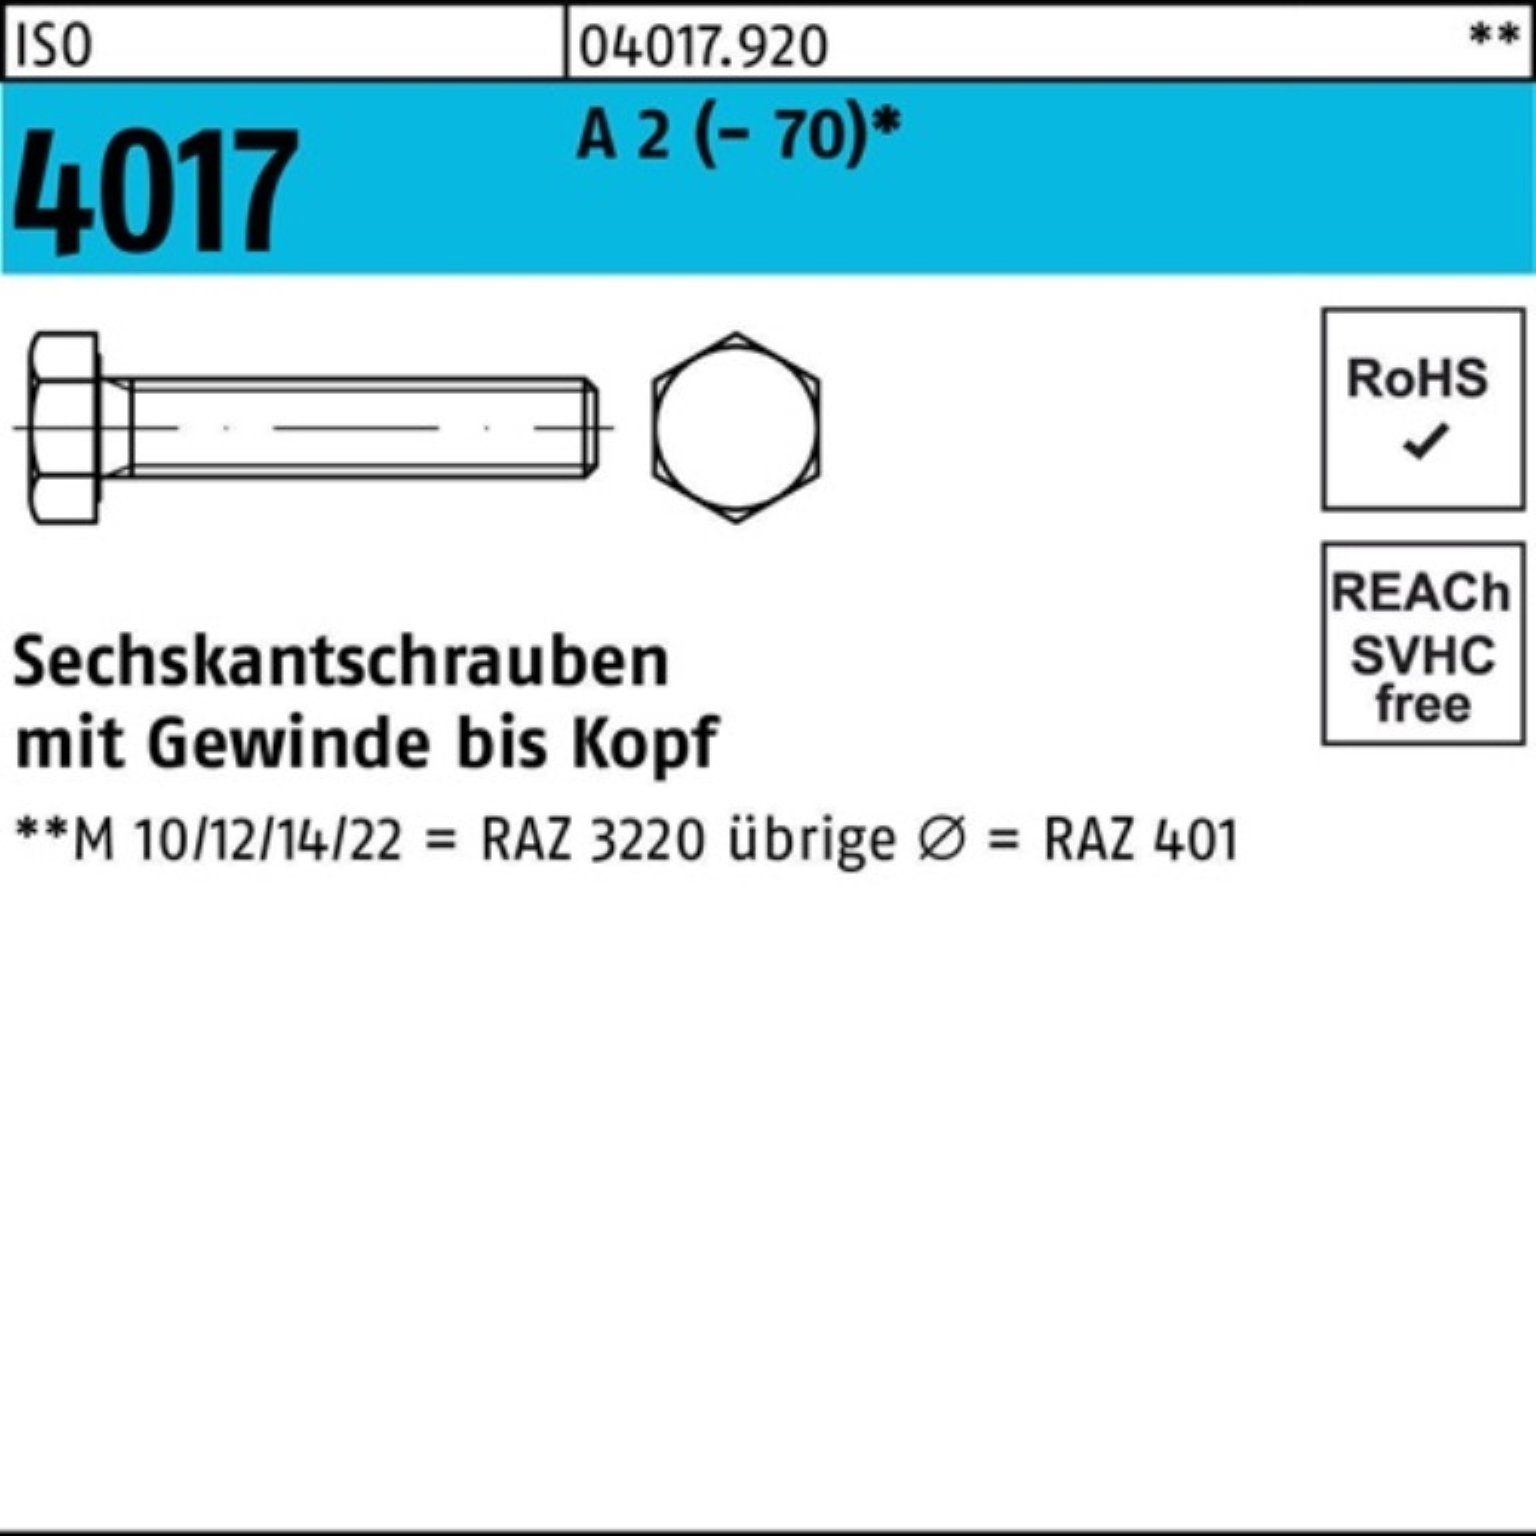 Bufab Sechskantschraube 100er Pack Sechskantschraube ISO 4017 VG M14x 150 A 2 (70) 25 Stück